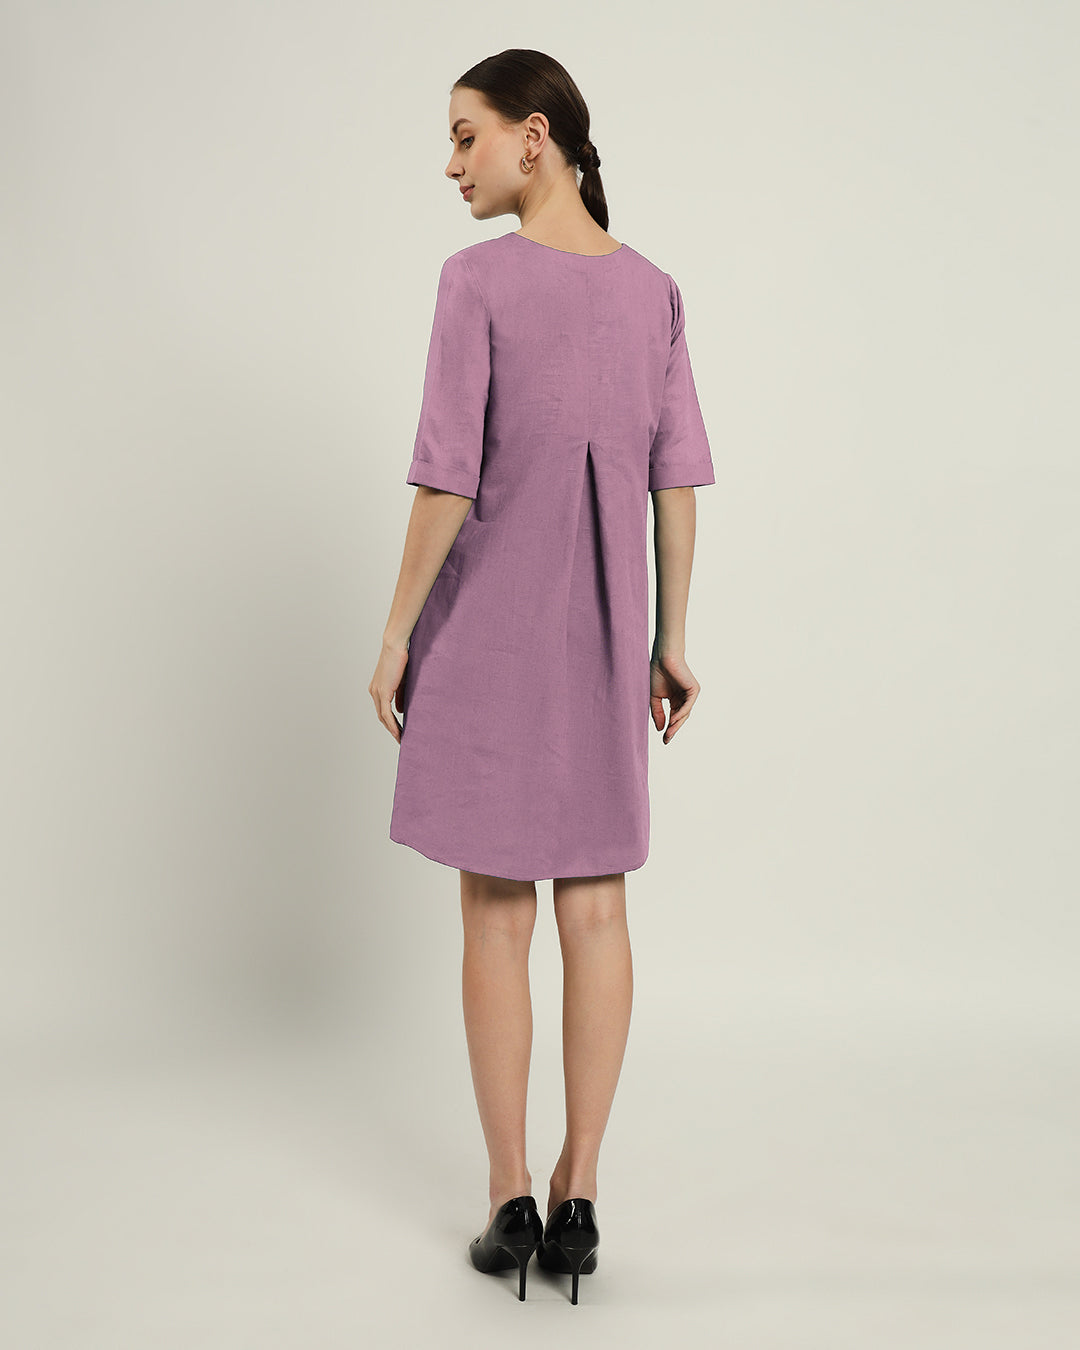 The Giza Purple Swirl Dress